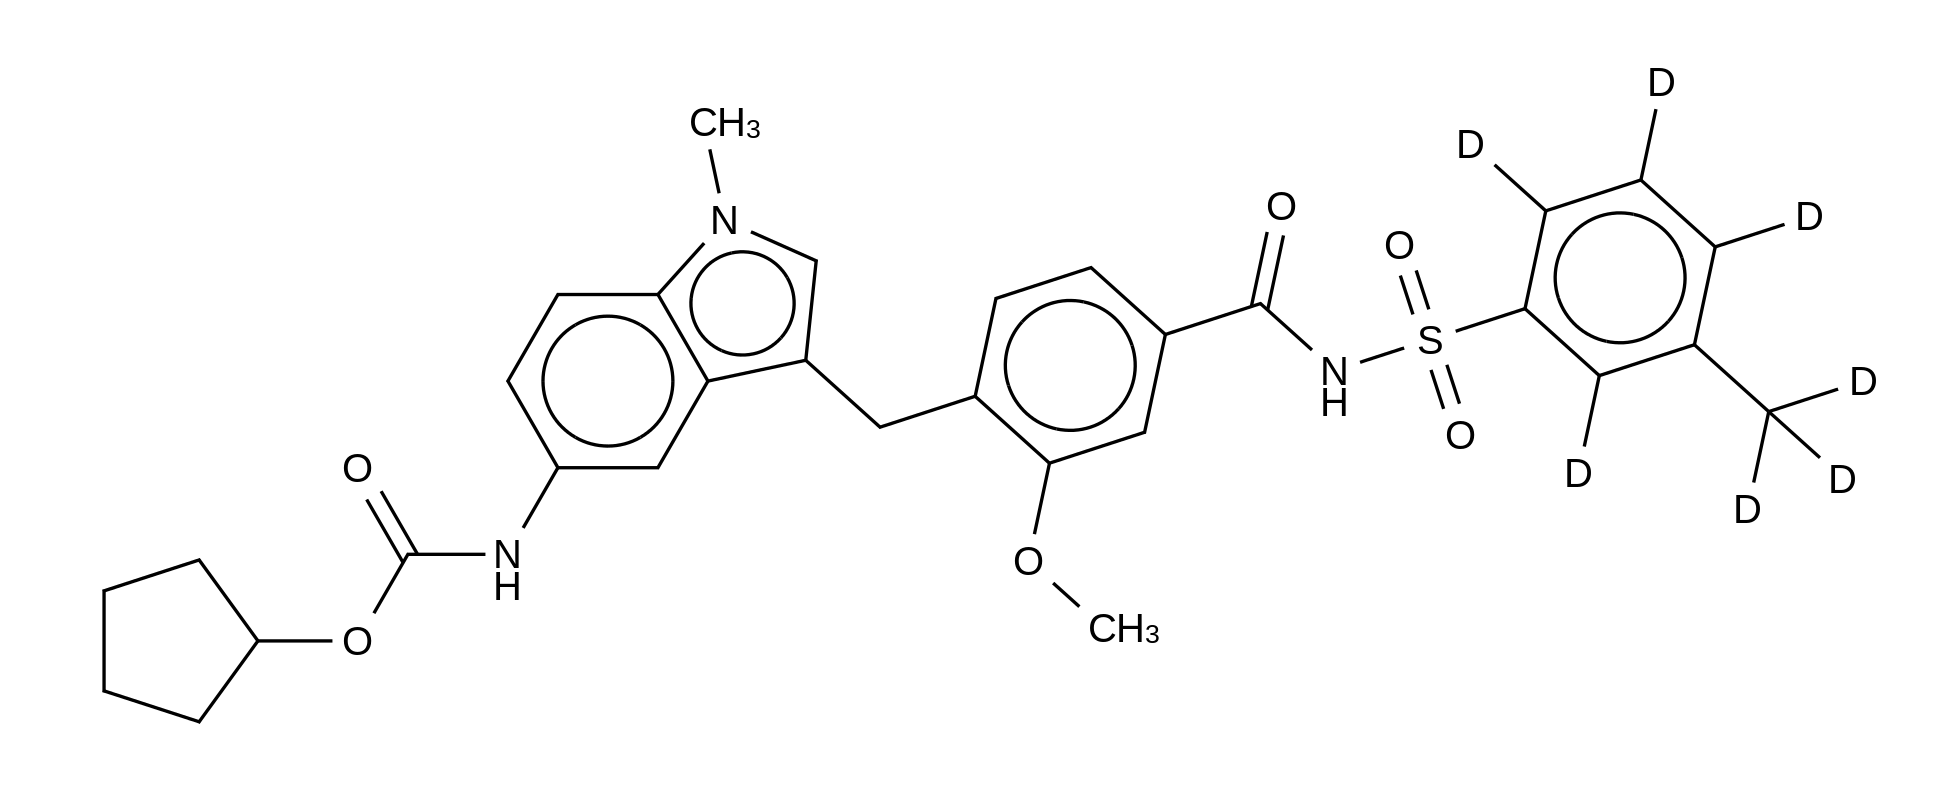 Zafirlukast m-Tolyl Isomer-d<sub>7</sub>